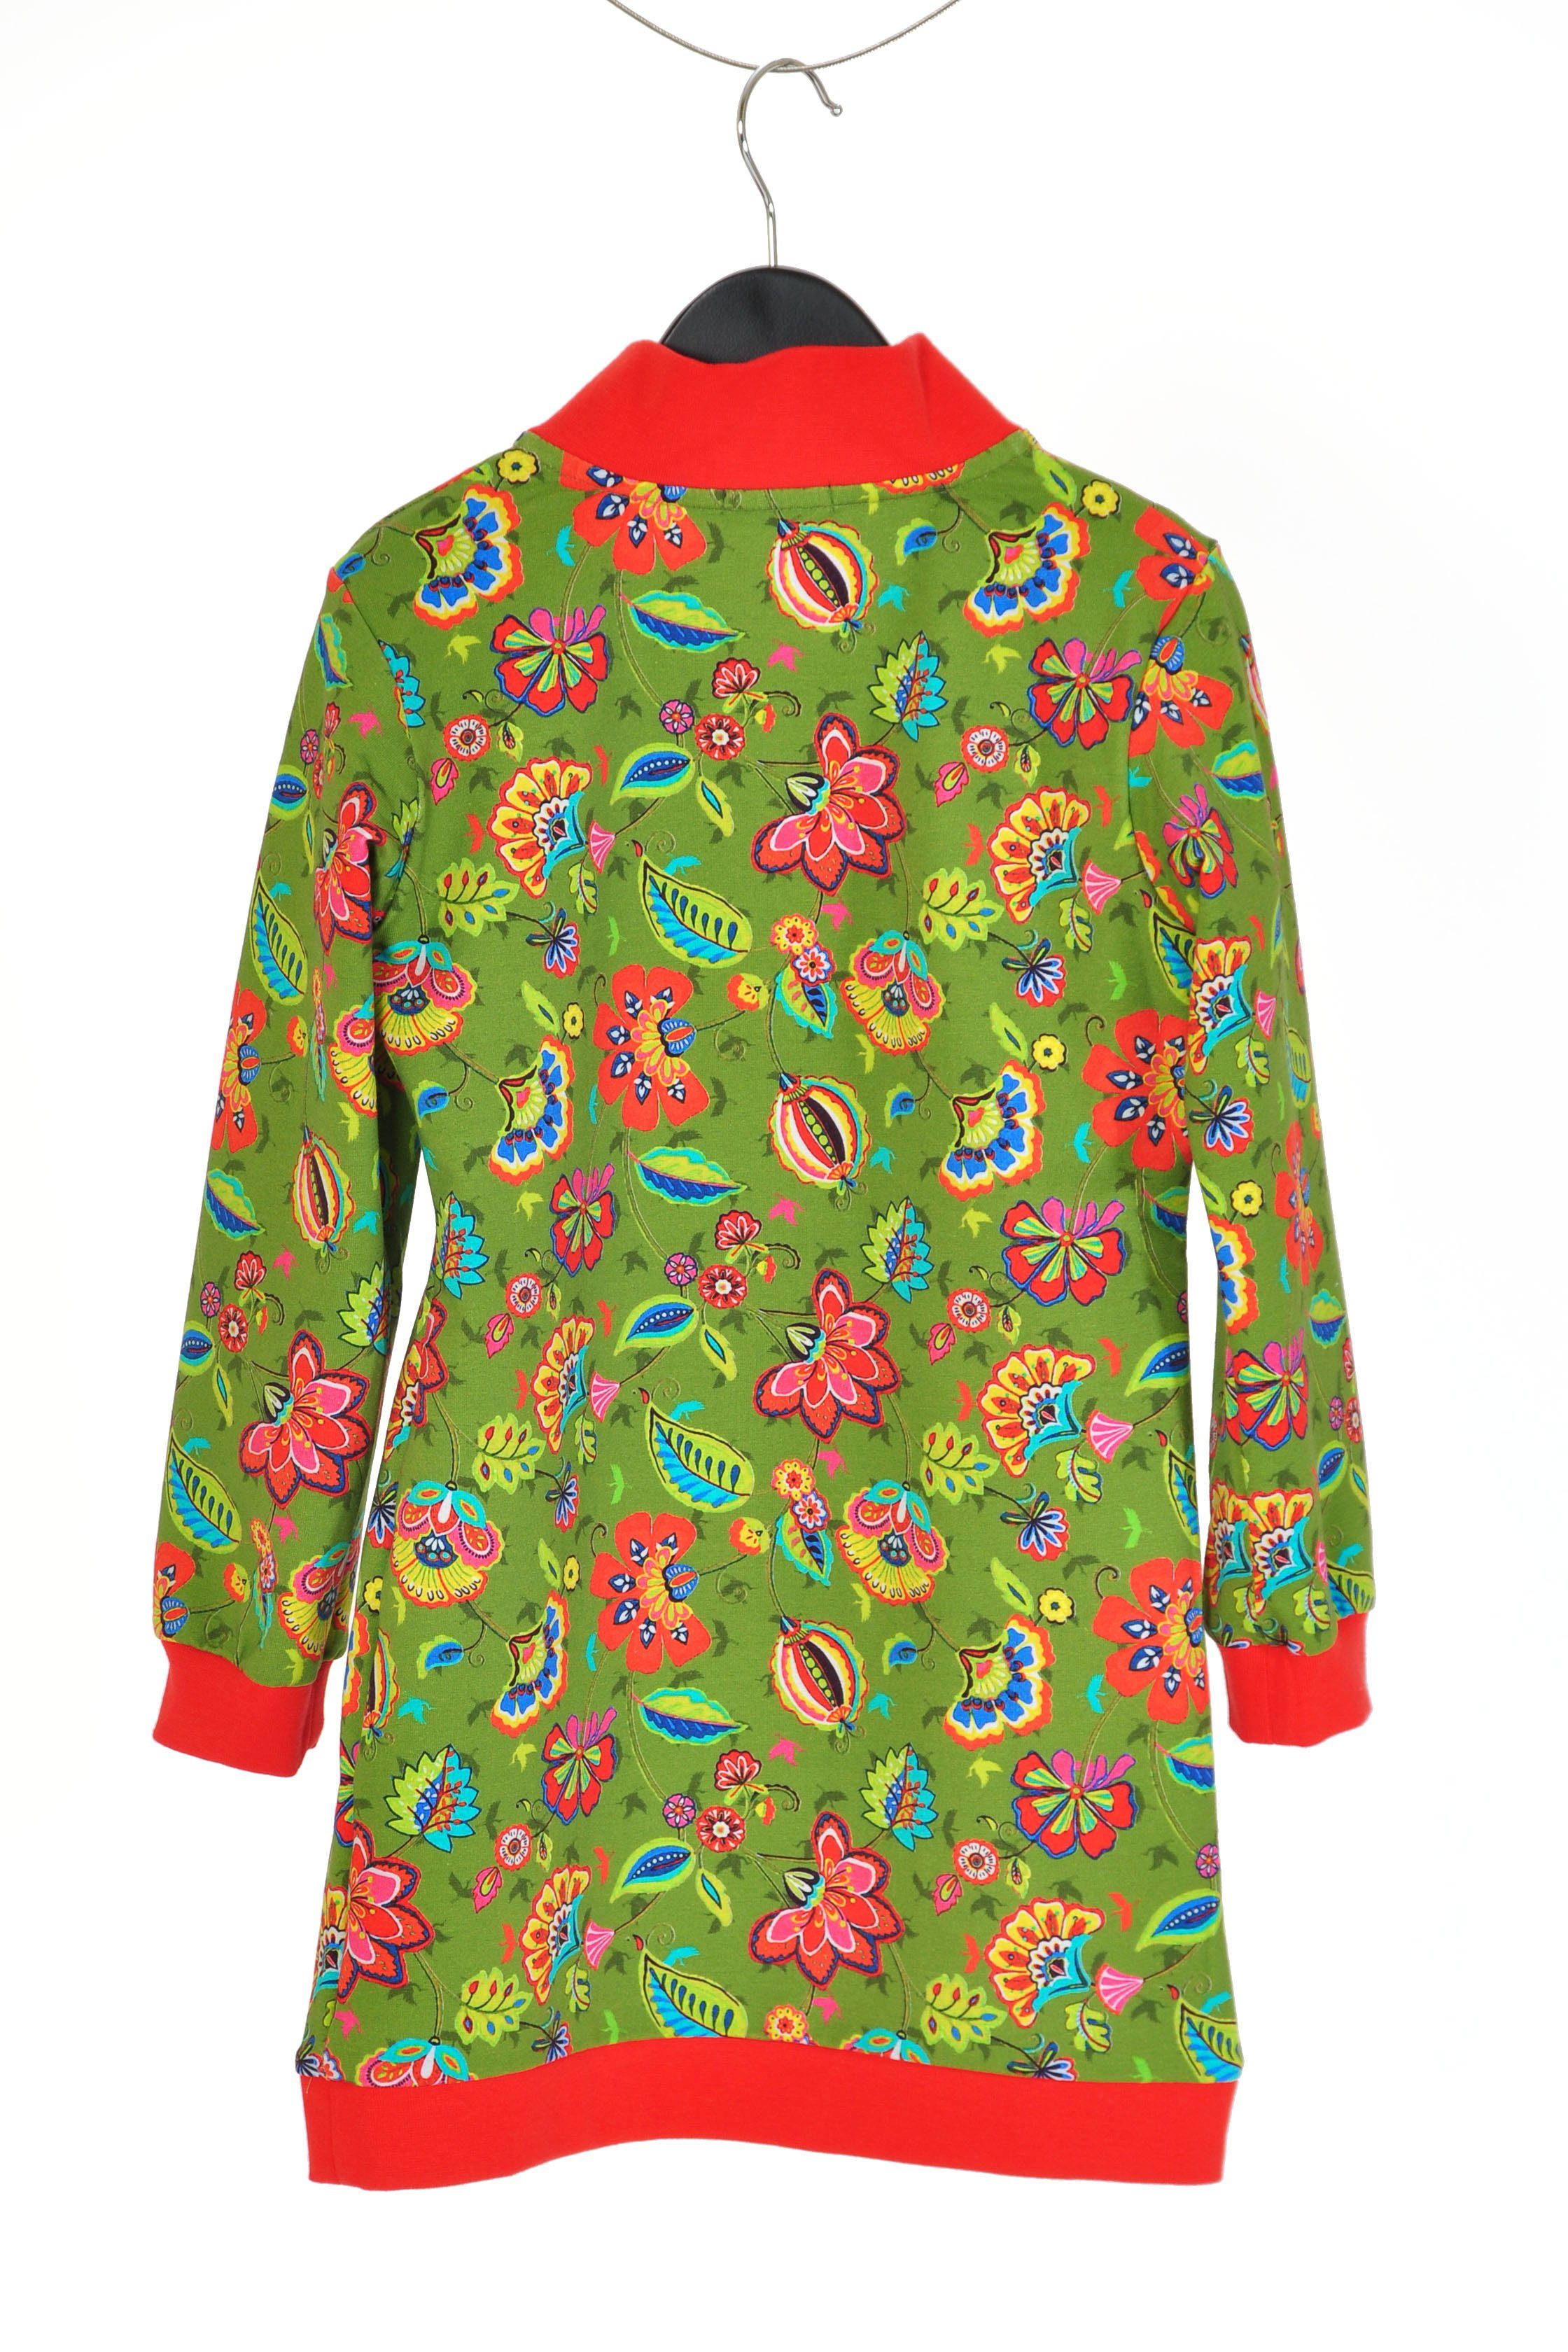 Mädchen mit coolismo europäische Produktion Sweatshirt oliv coole Blumen für Sweatkleid Motivdruck Kleid